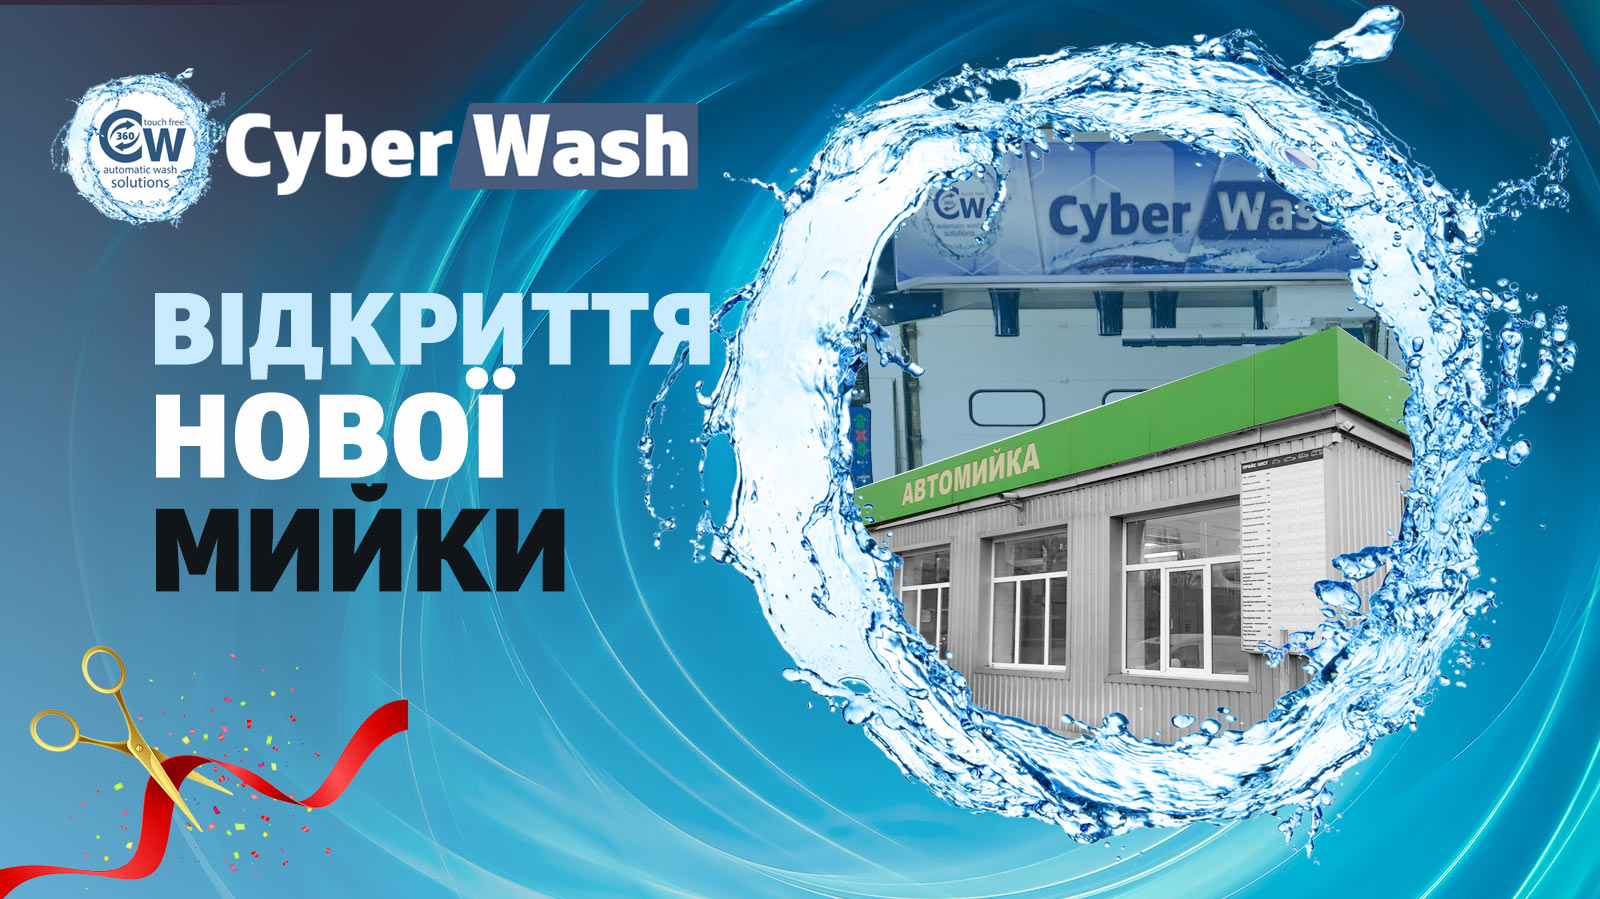 Роботизована мийка CyberWash у Кривому Розі, вул. Телевізійна, 1б